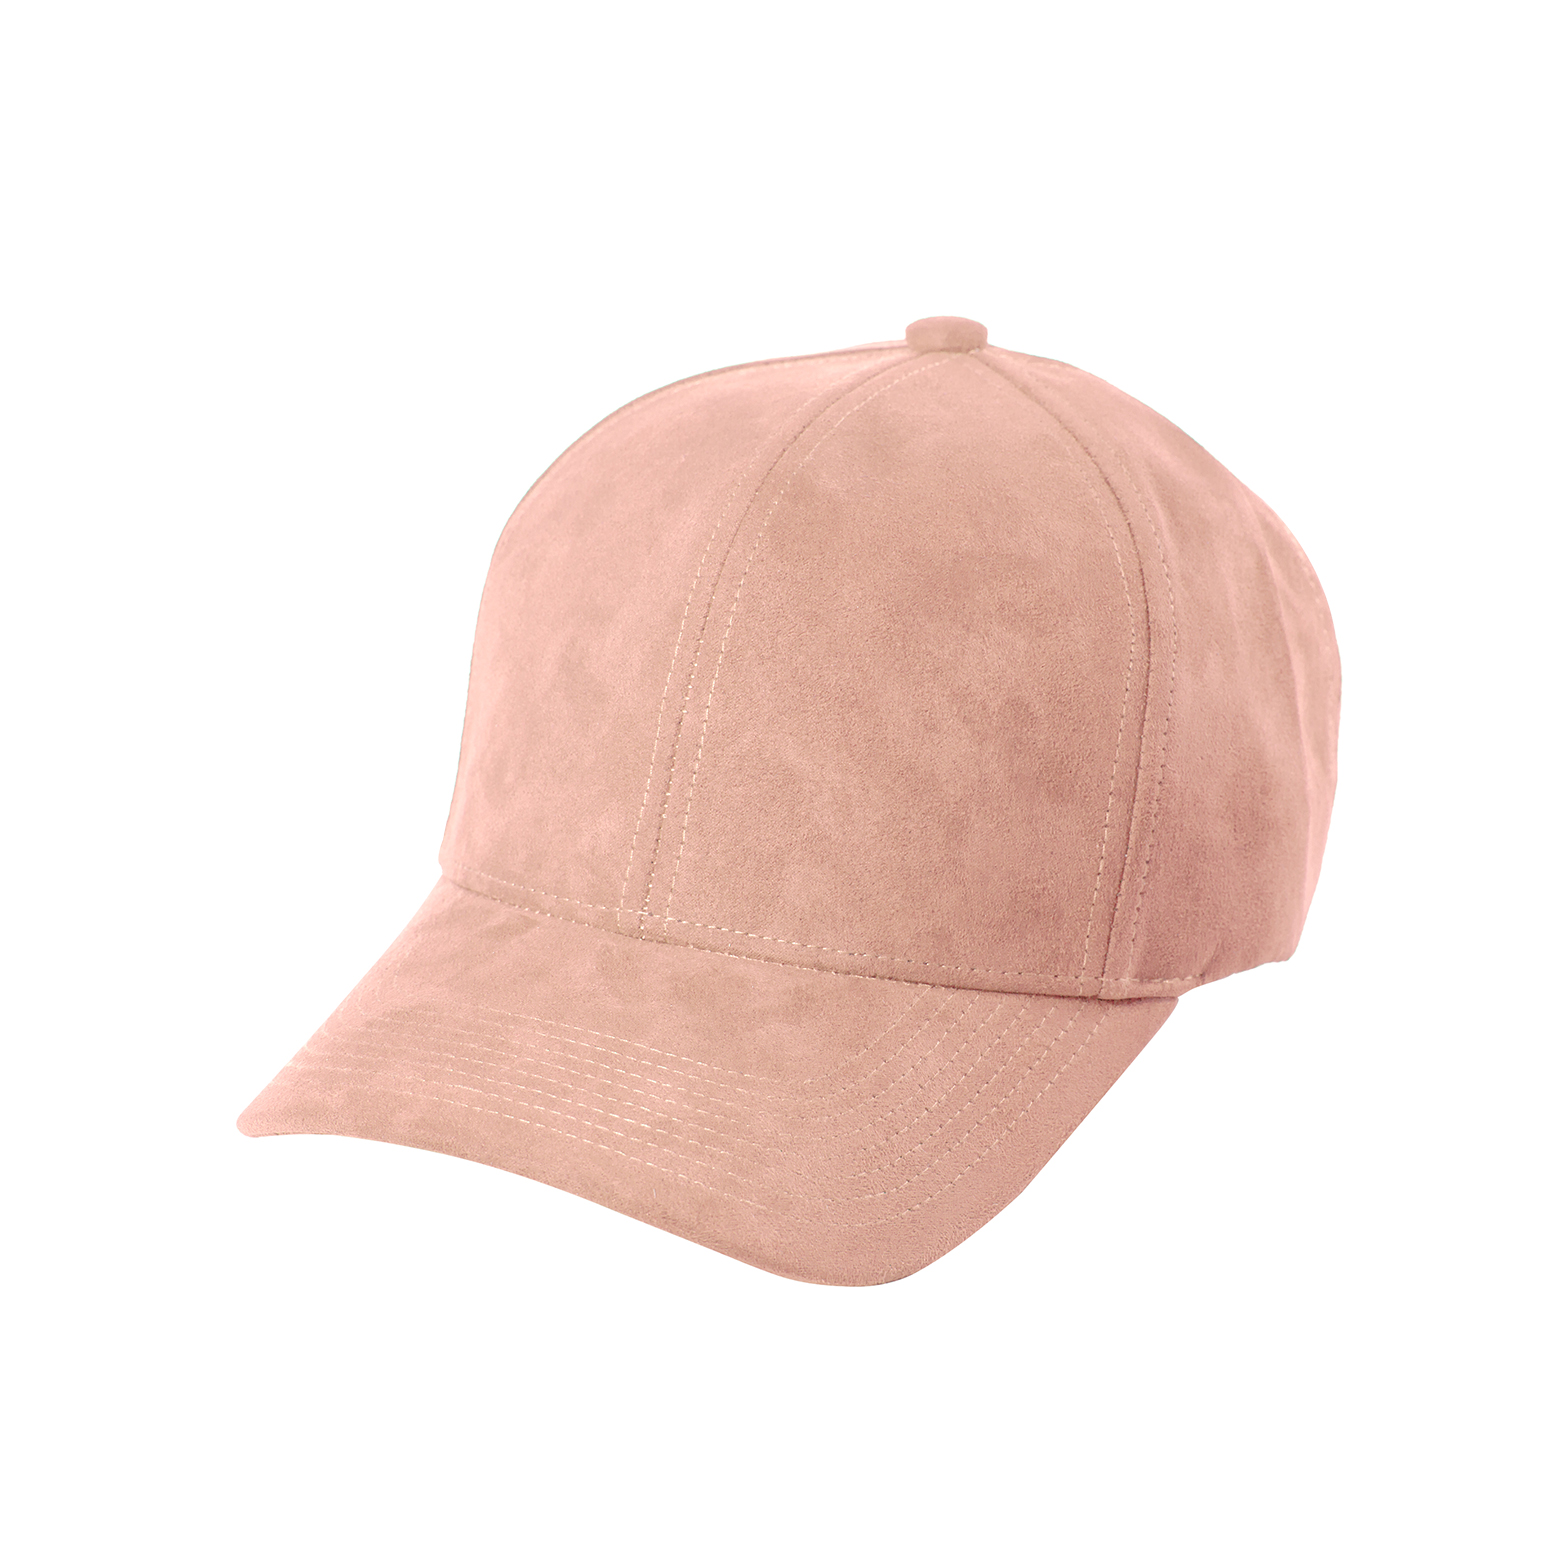 DSLINE BASEBALL CAP CLOUD ROSE SUEDE / GOLD - DSLINE DESIGN